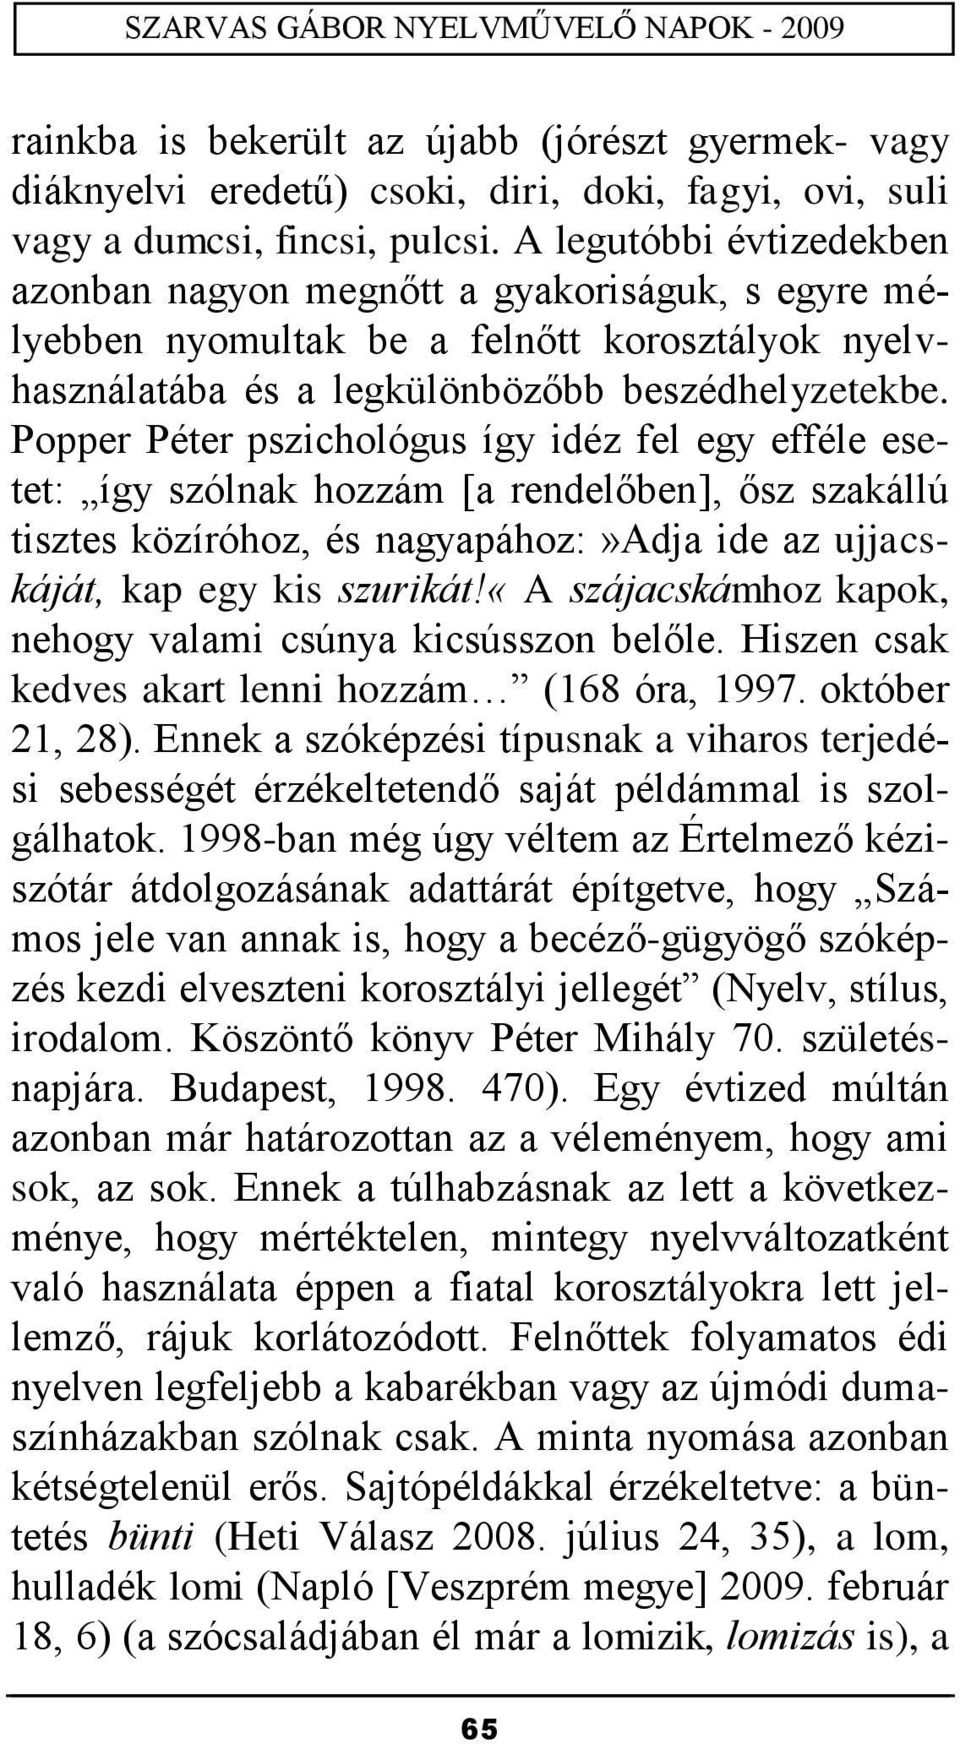 Popper Péter pszichológus így idéz fel egy efféle esetet: így szólnak hozzám [a rendelőben], ősz szakállú tisztes közíróhoz, és nagyapához:»adja ide az ujjacskáját, kap egy kis szurikát!